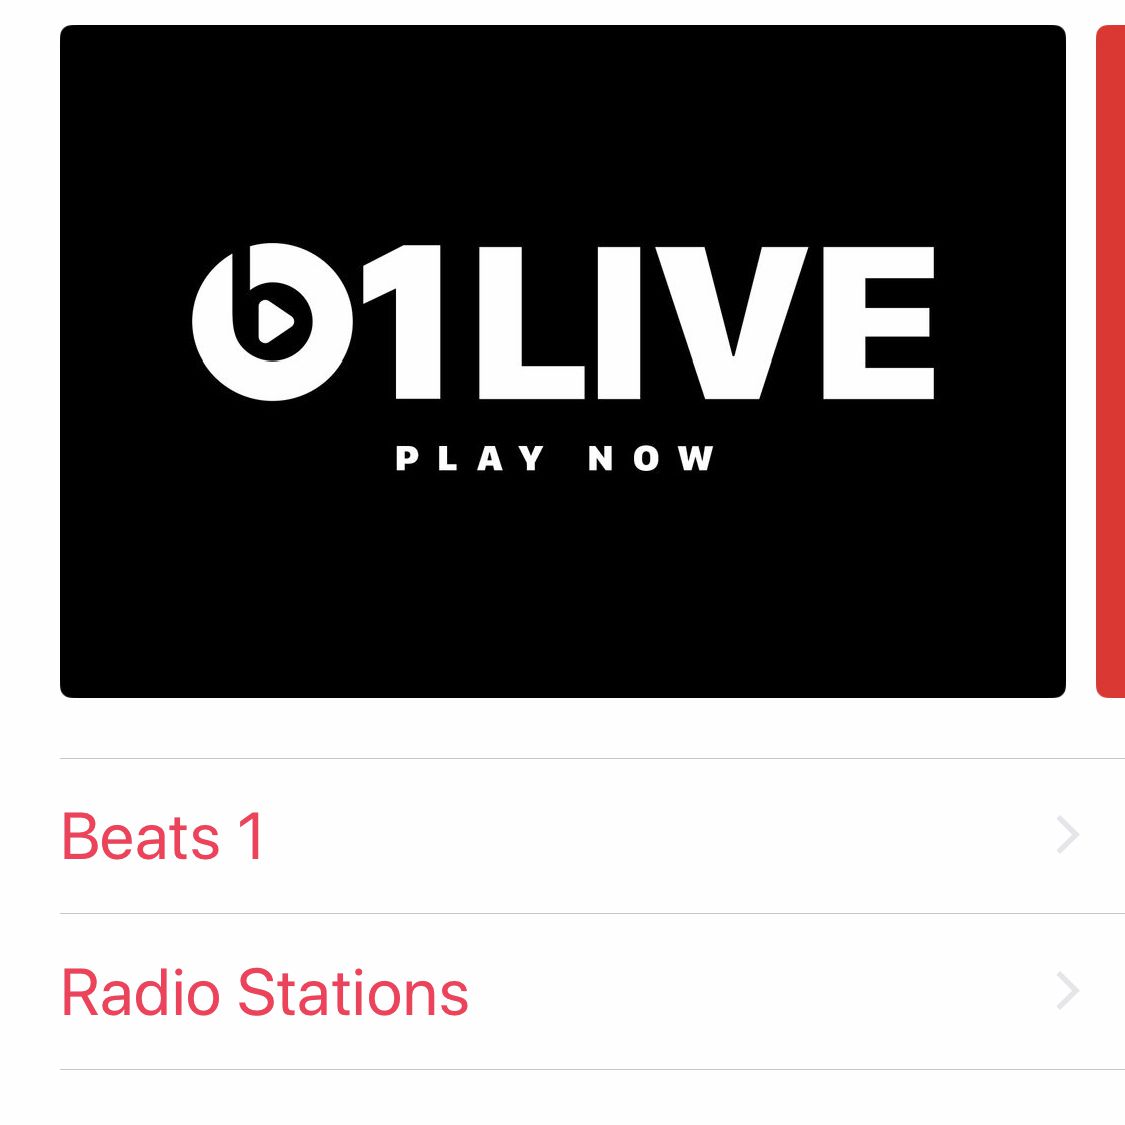 Een screenshot van Radio-opties in Apple Music op iPhone